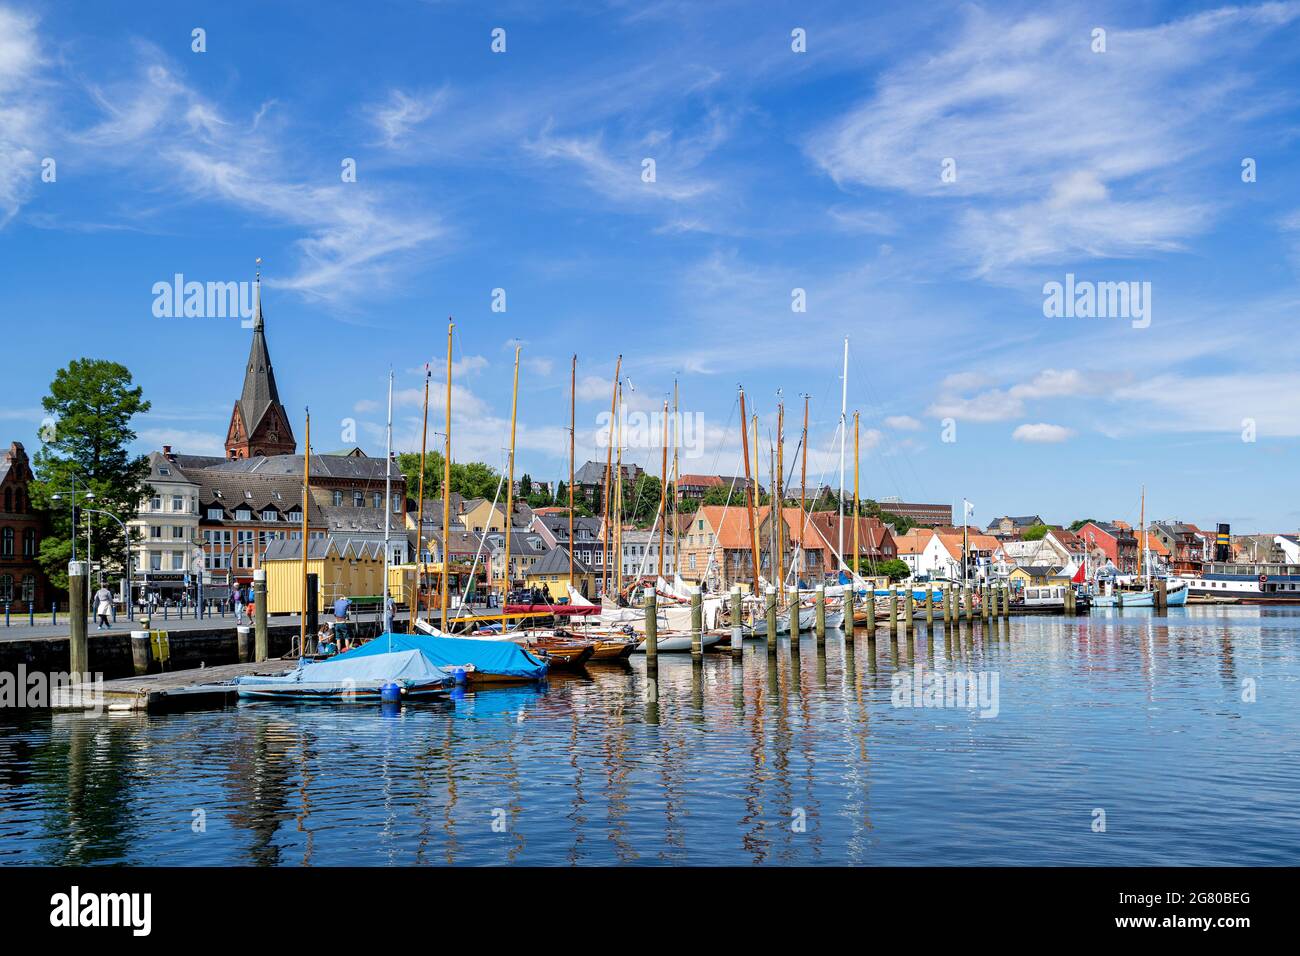 Hafen von Flensburg, Deutschland - Westufer Stockfoto